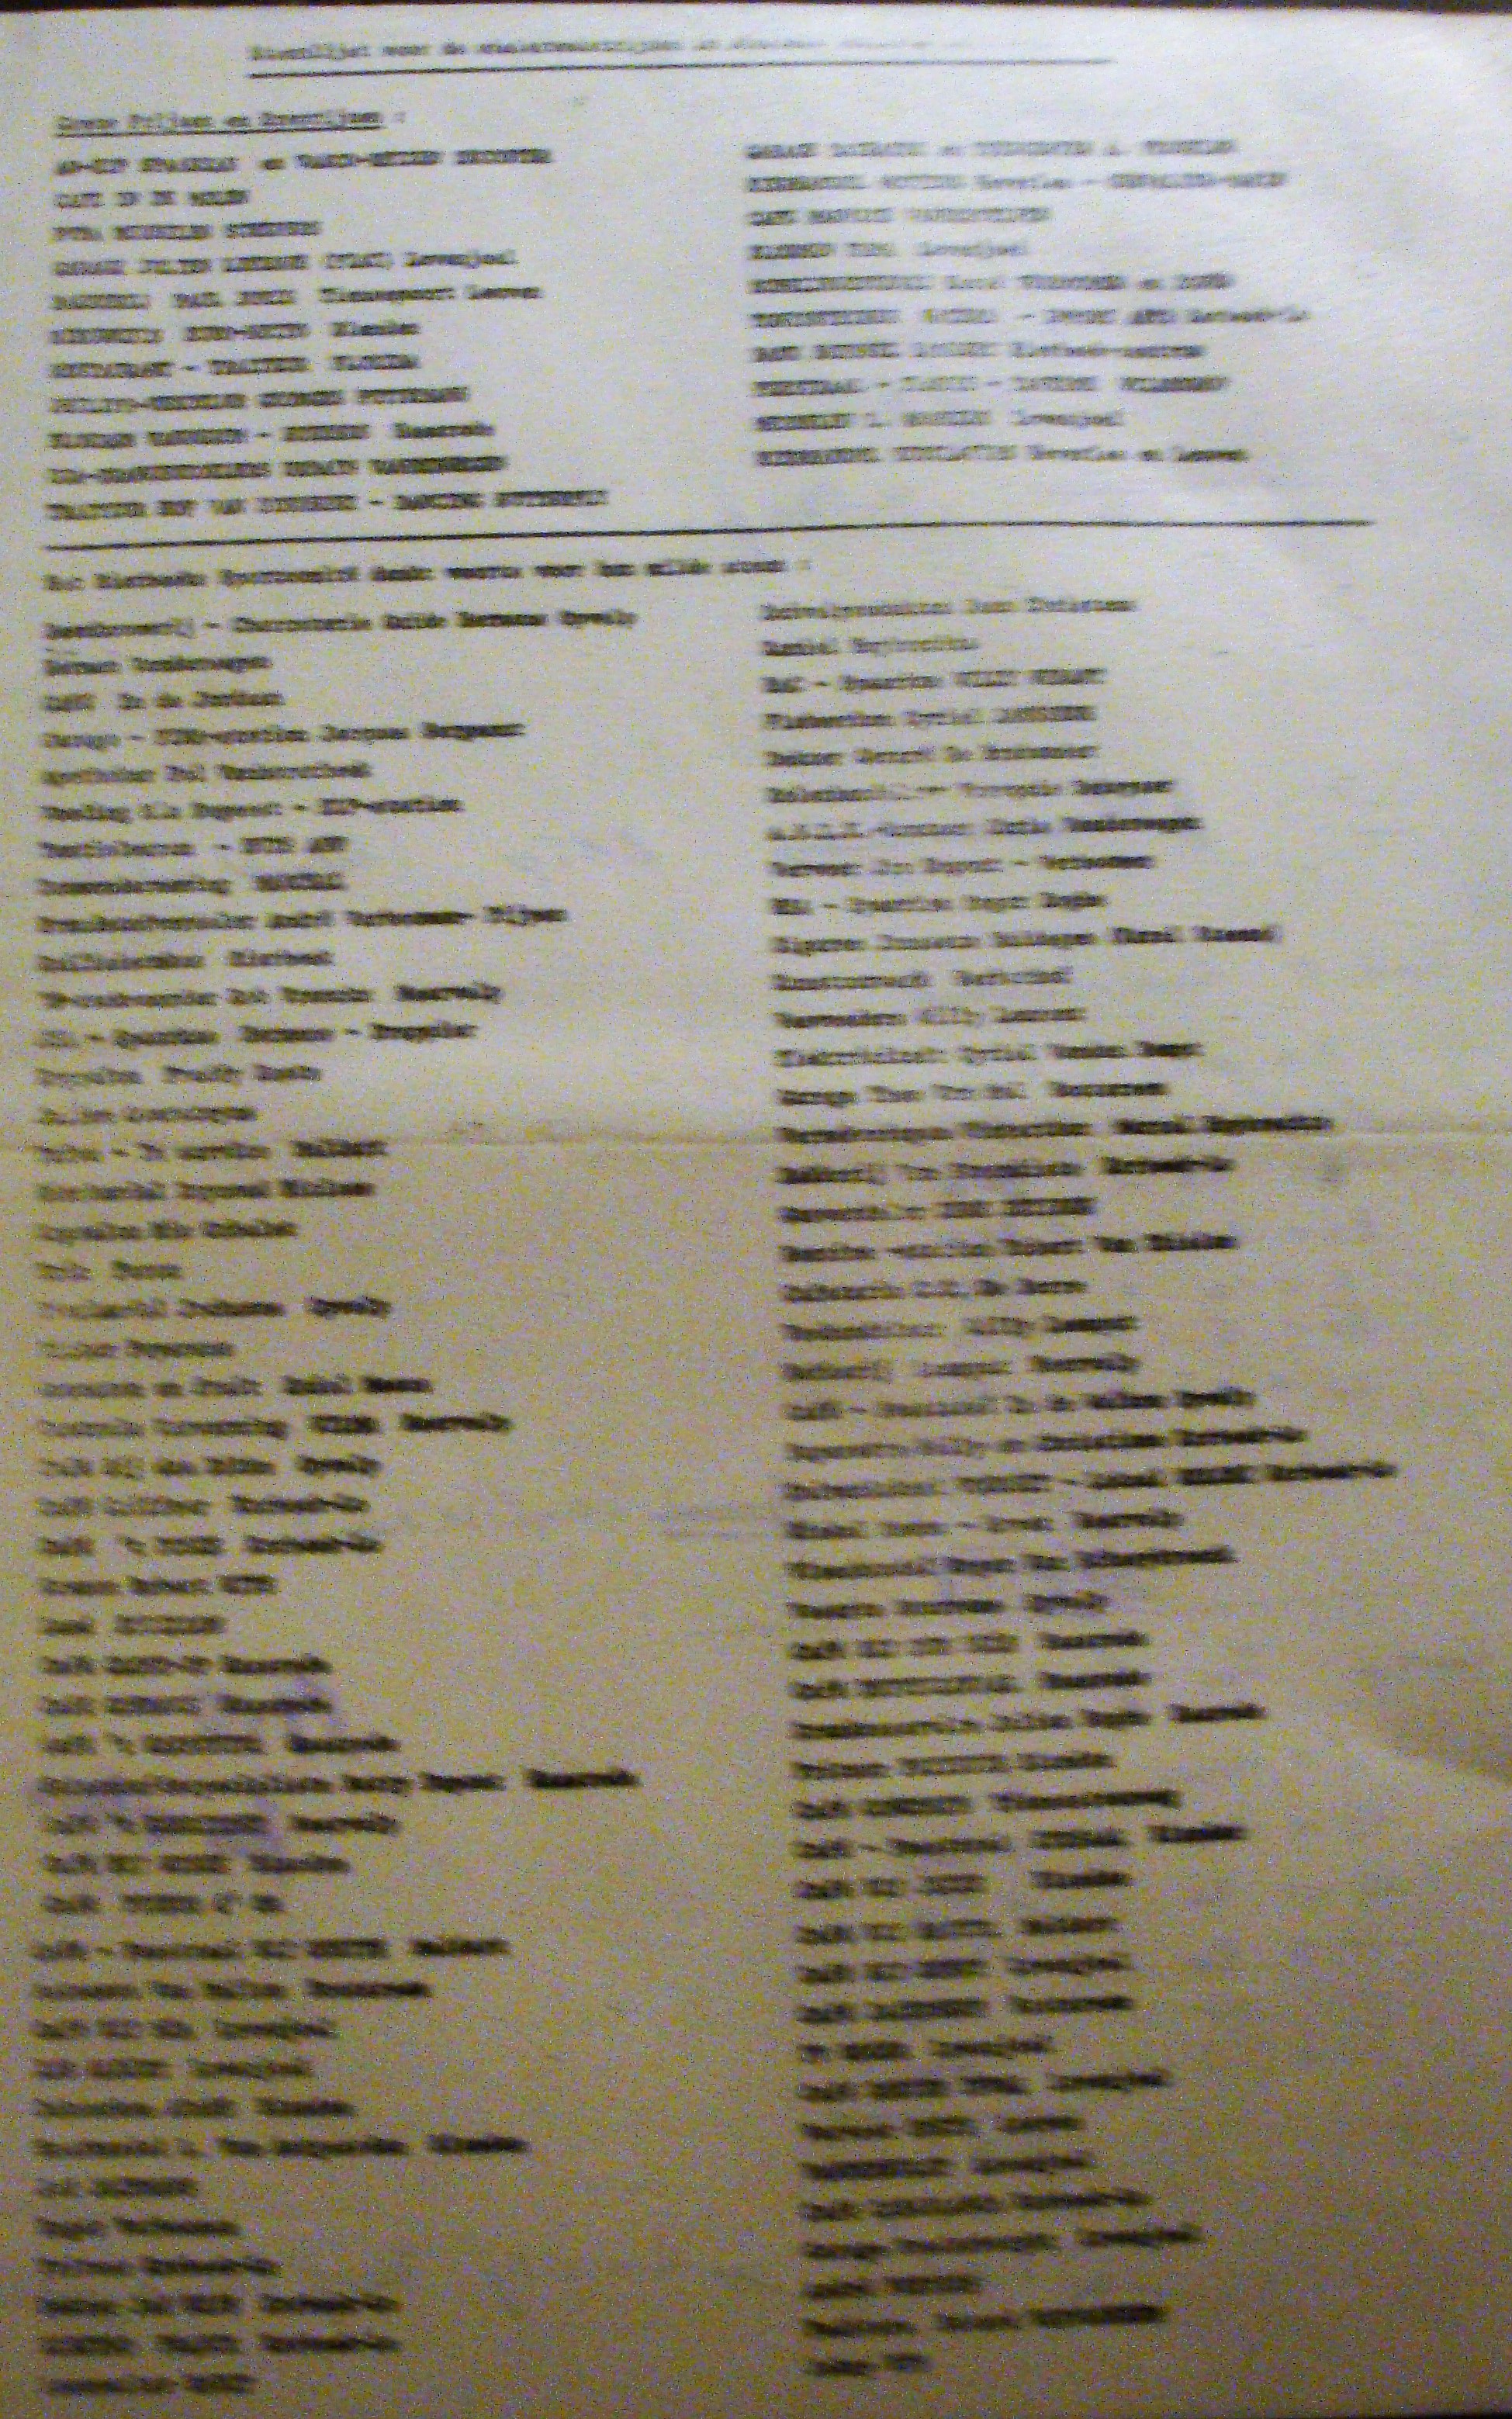 1985-sponsors.JPG - 1,82 MB